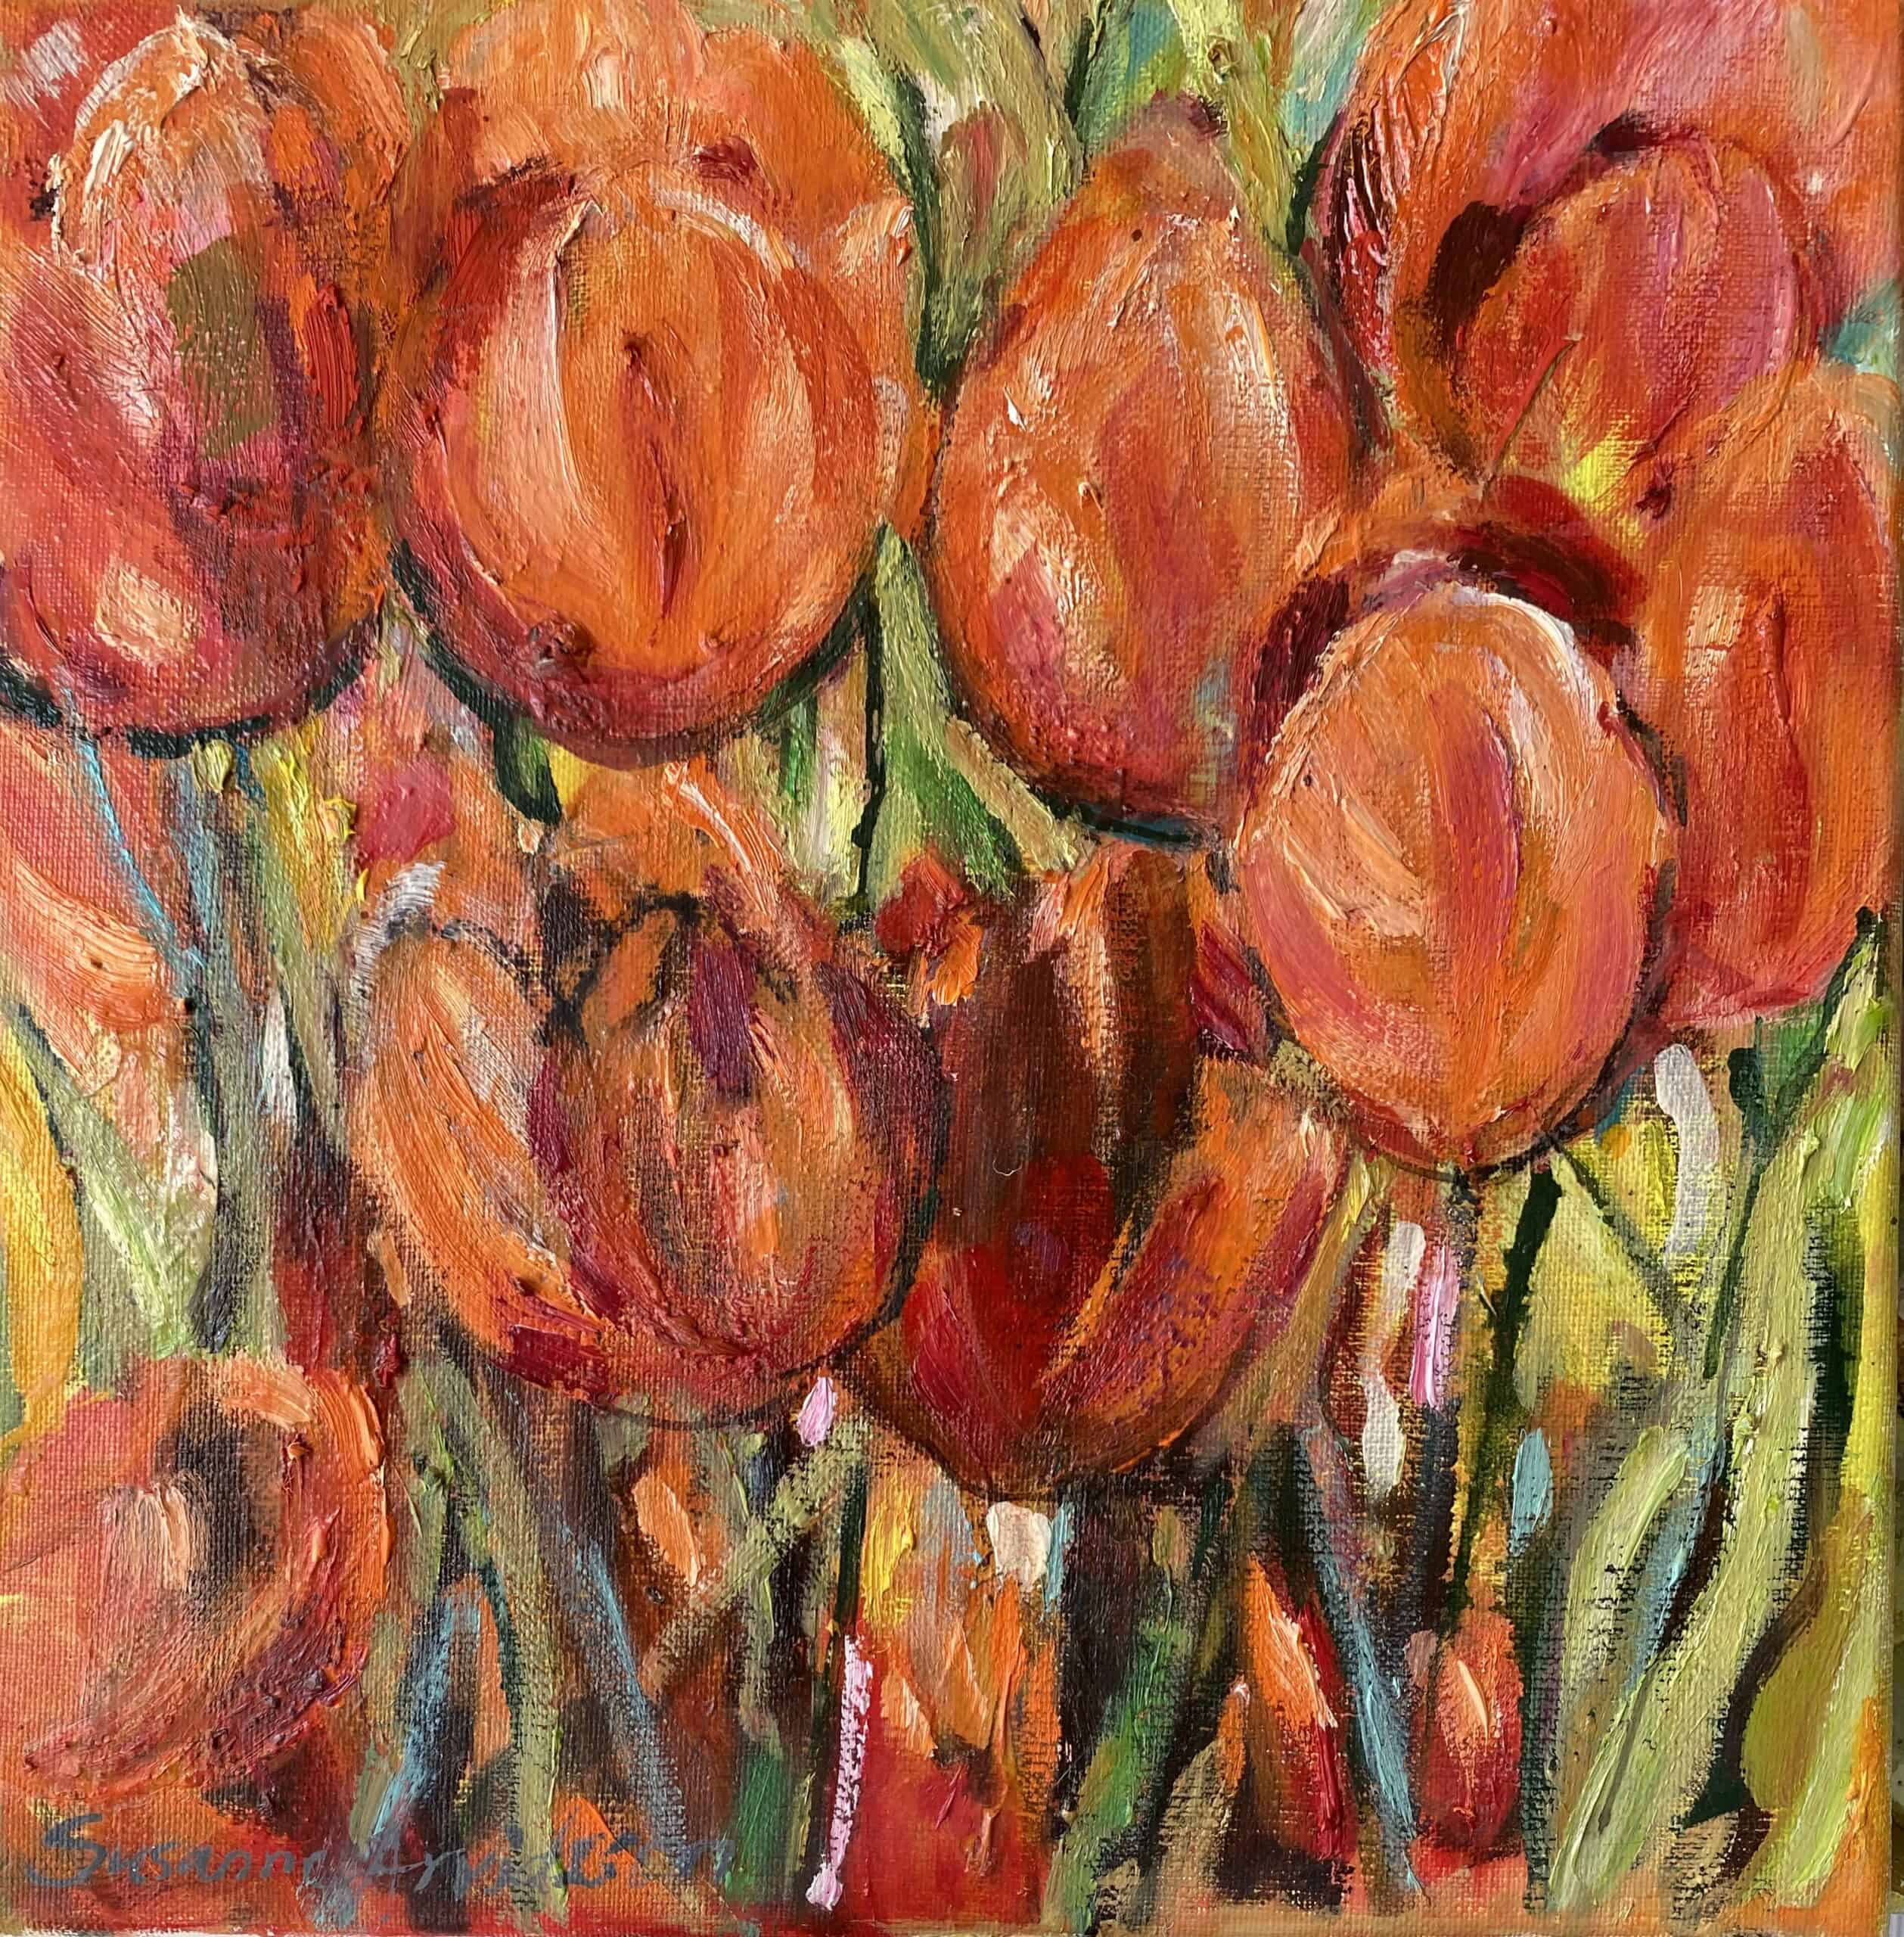 Köpa tavlor online - Tulips